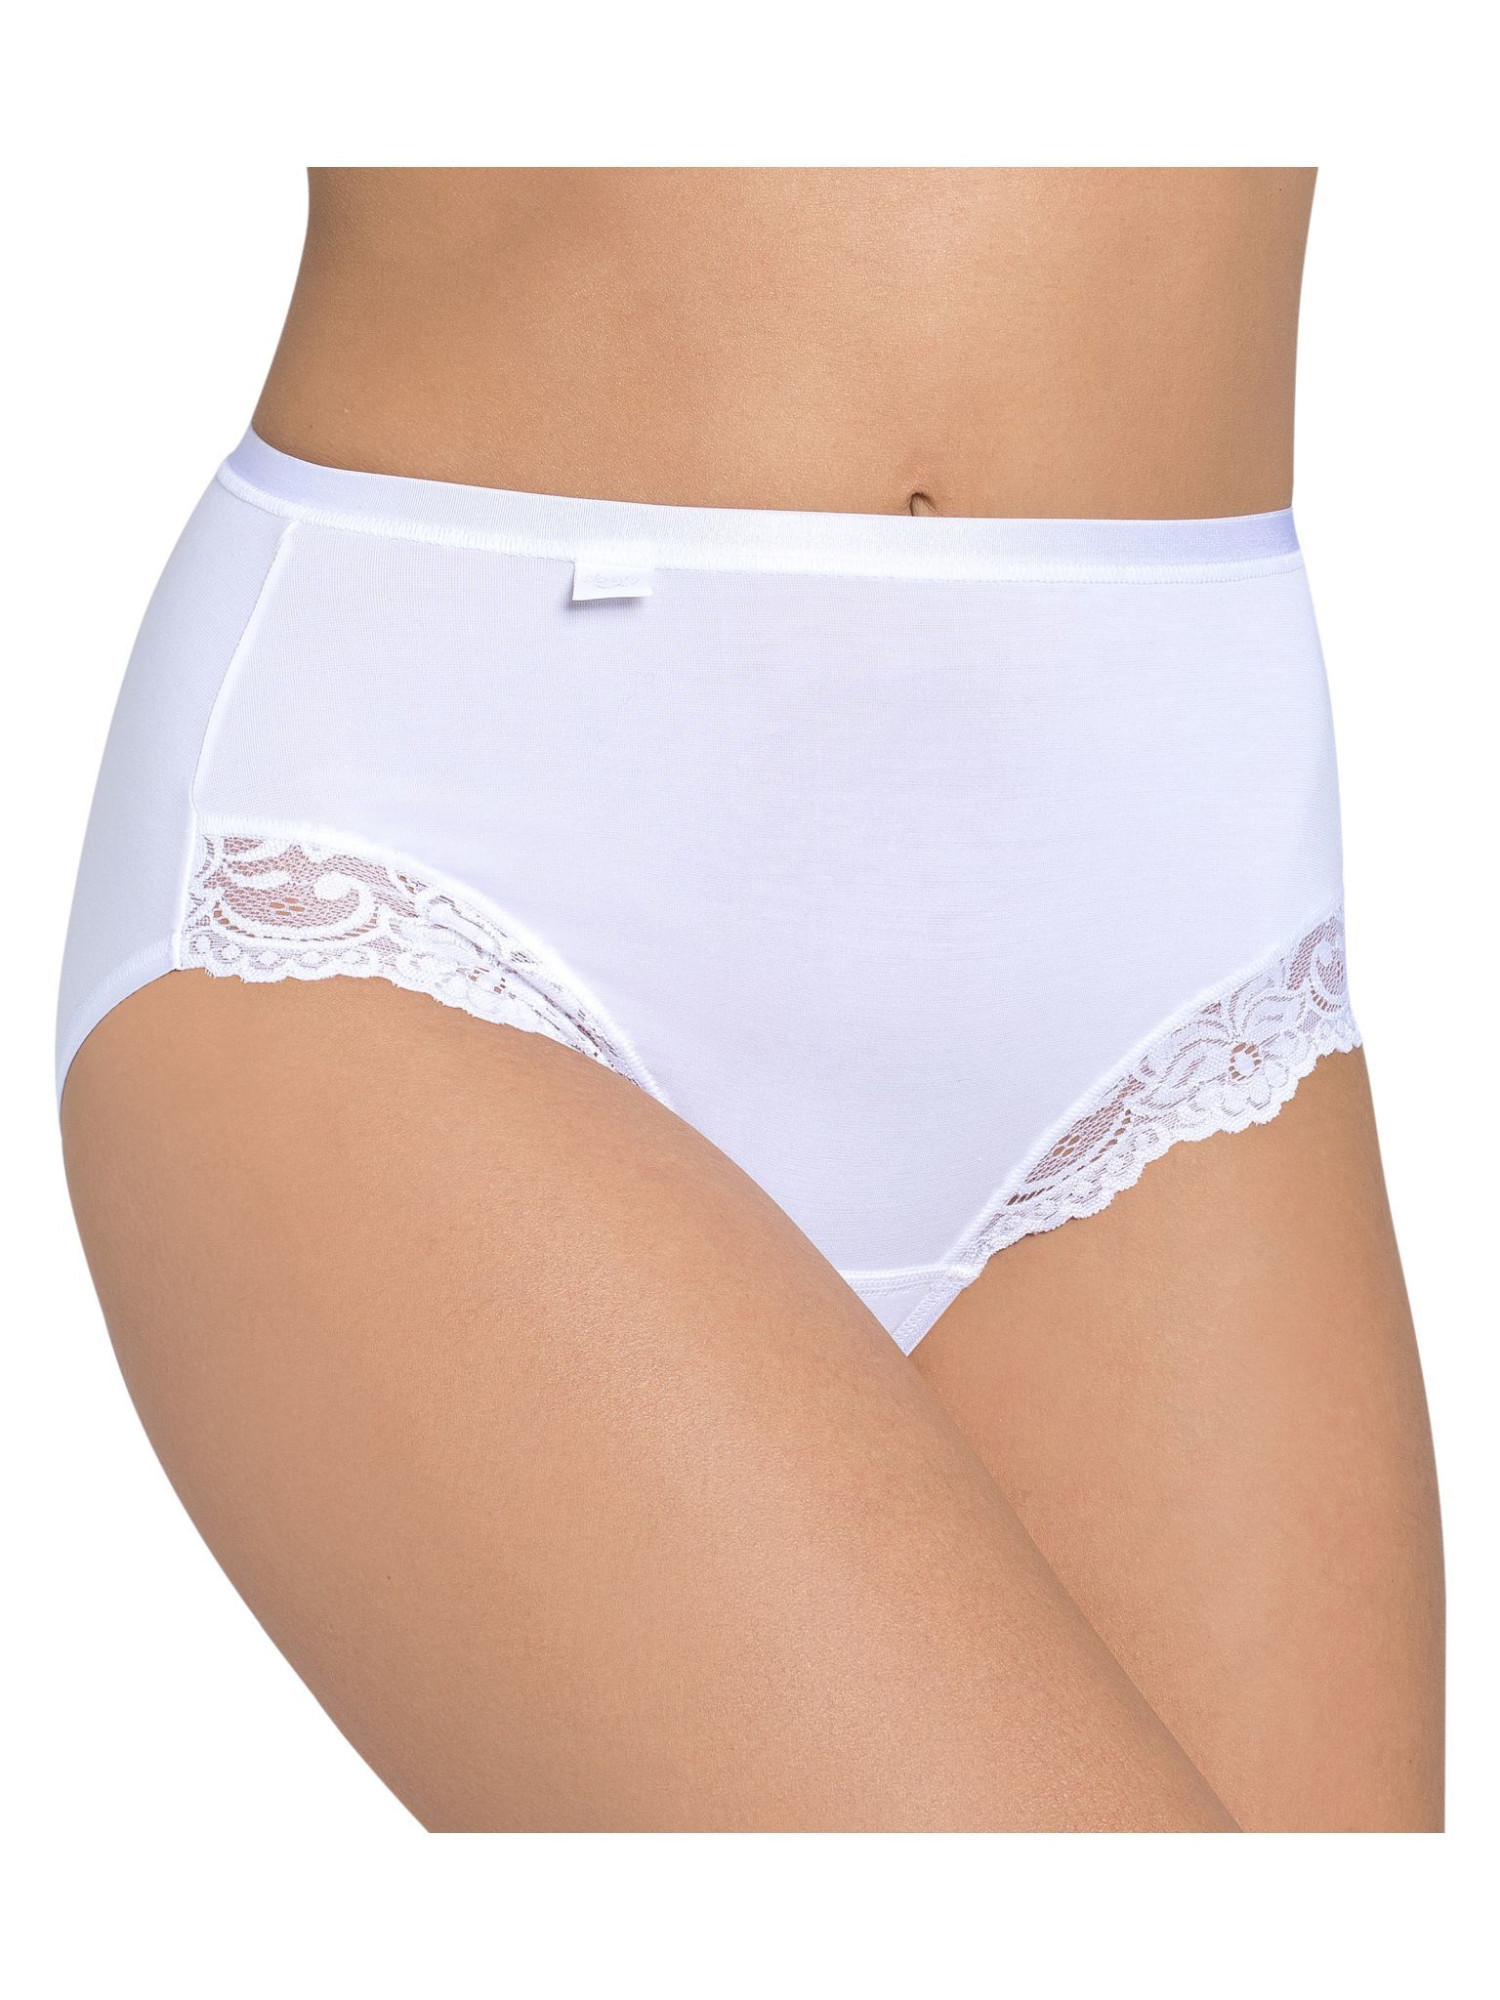 Dámské kalhotky Romance Maxi bílé - Sloggi WHITE 40